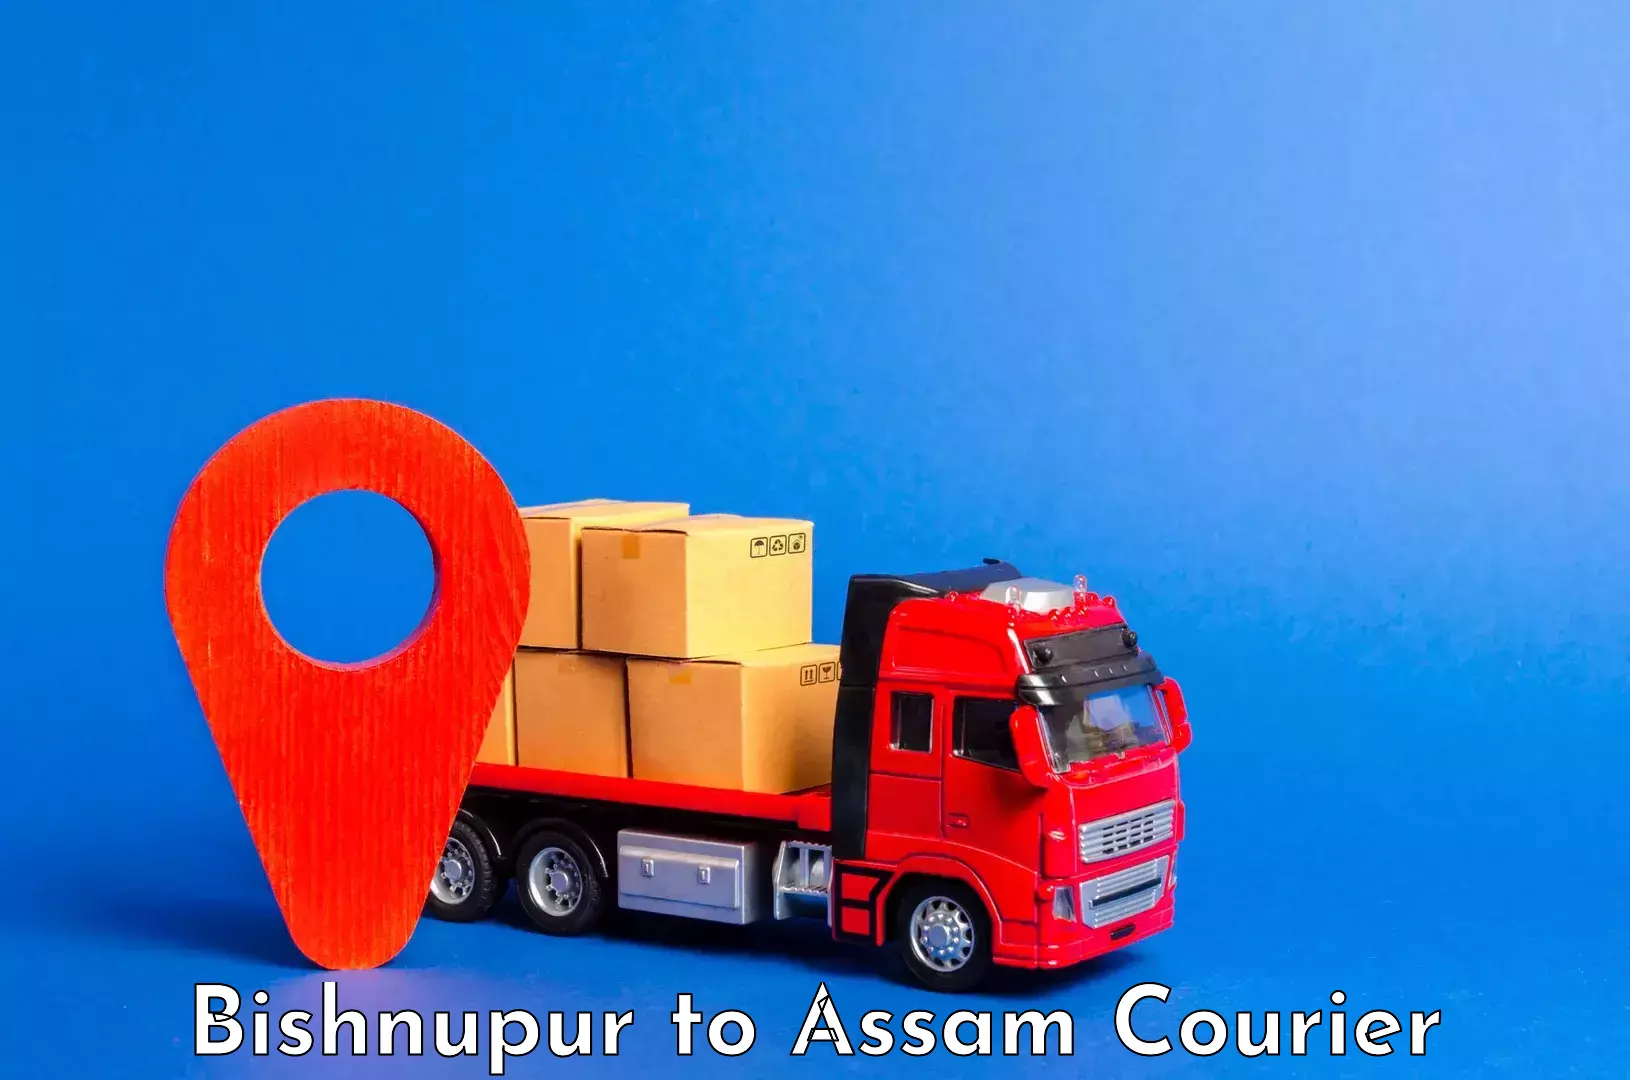 Luggage transport consultancy Bishnupur to Kalain